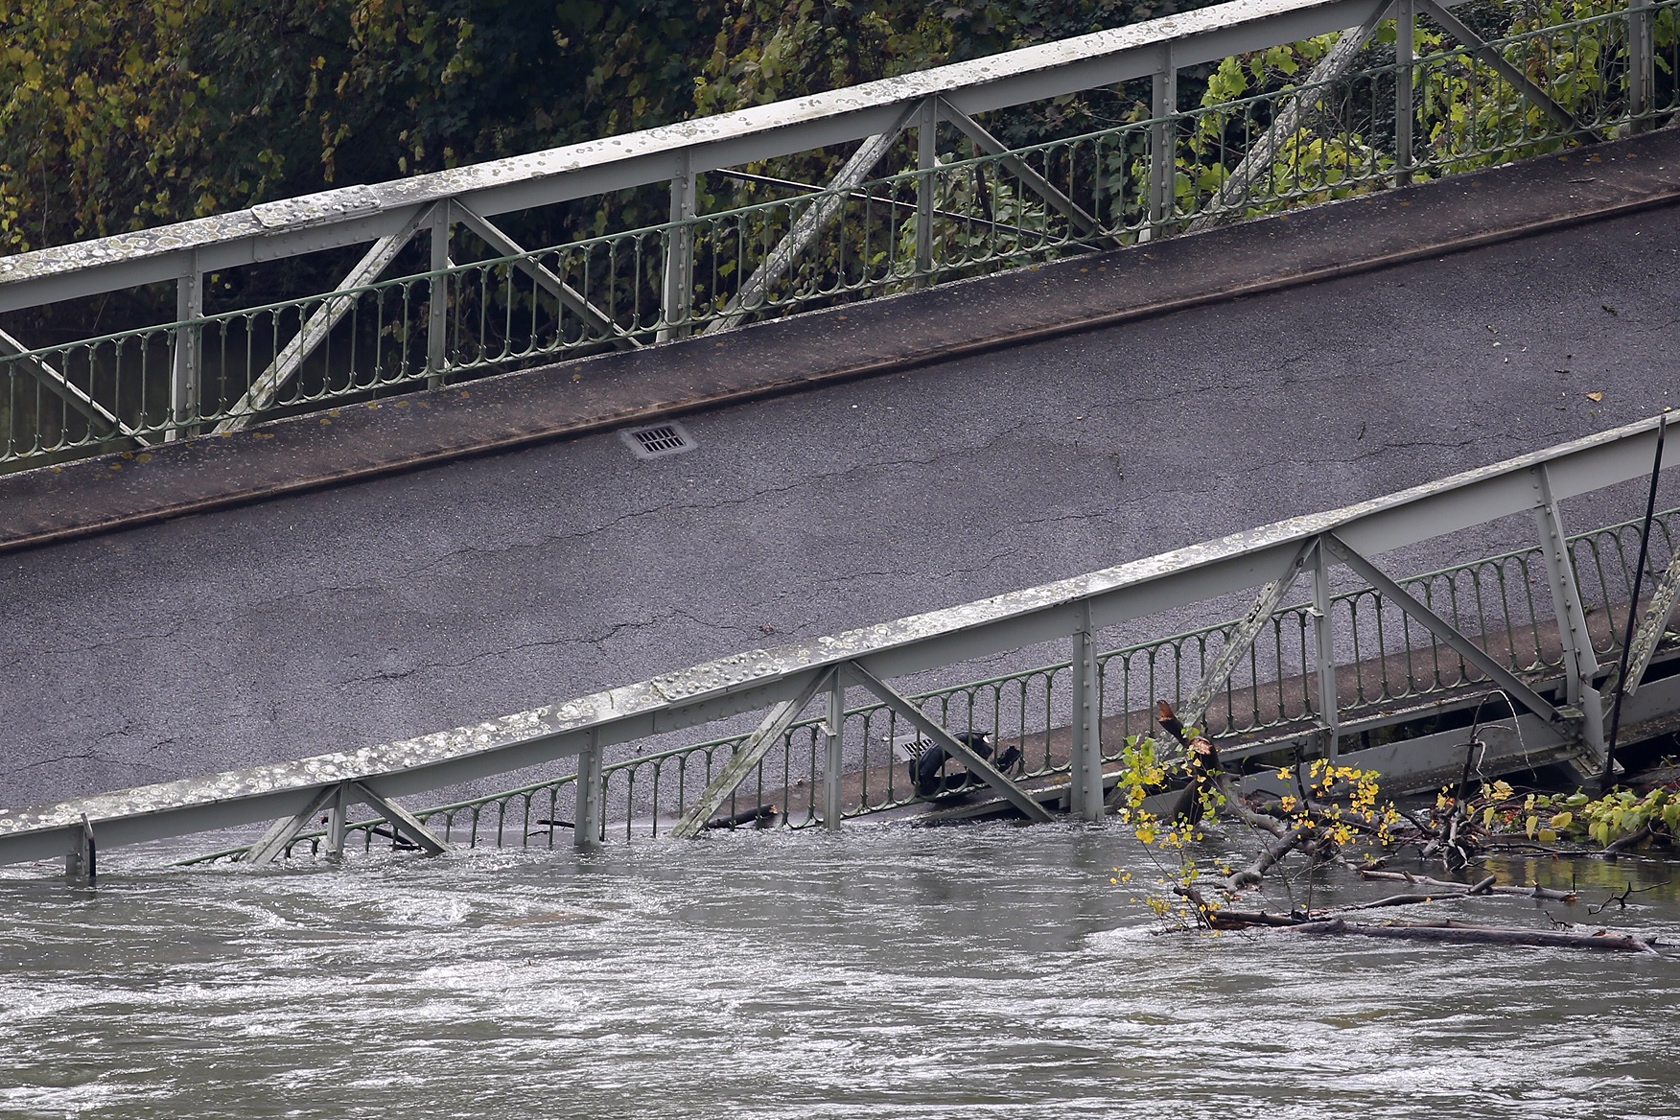 Според информациите за инцидента мостът се предал, когато по него тръгнал камион с надвишаващо разрешения тонаж тегло. Това довело до срутване на конструкцията. Камионът паднал в реката заедно с кола, която едновременно преминавала по моста.